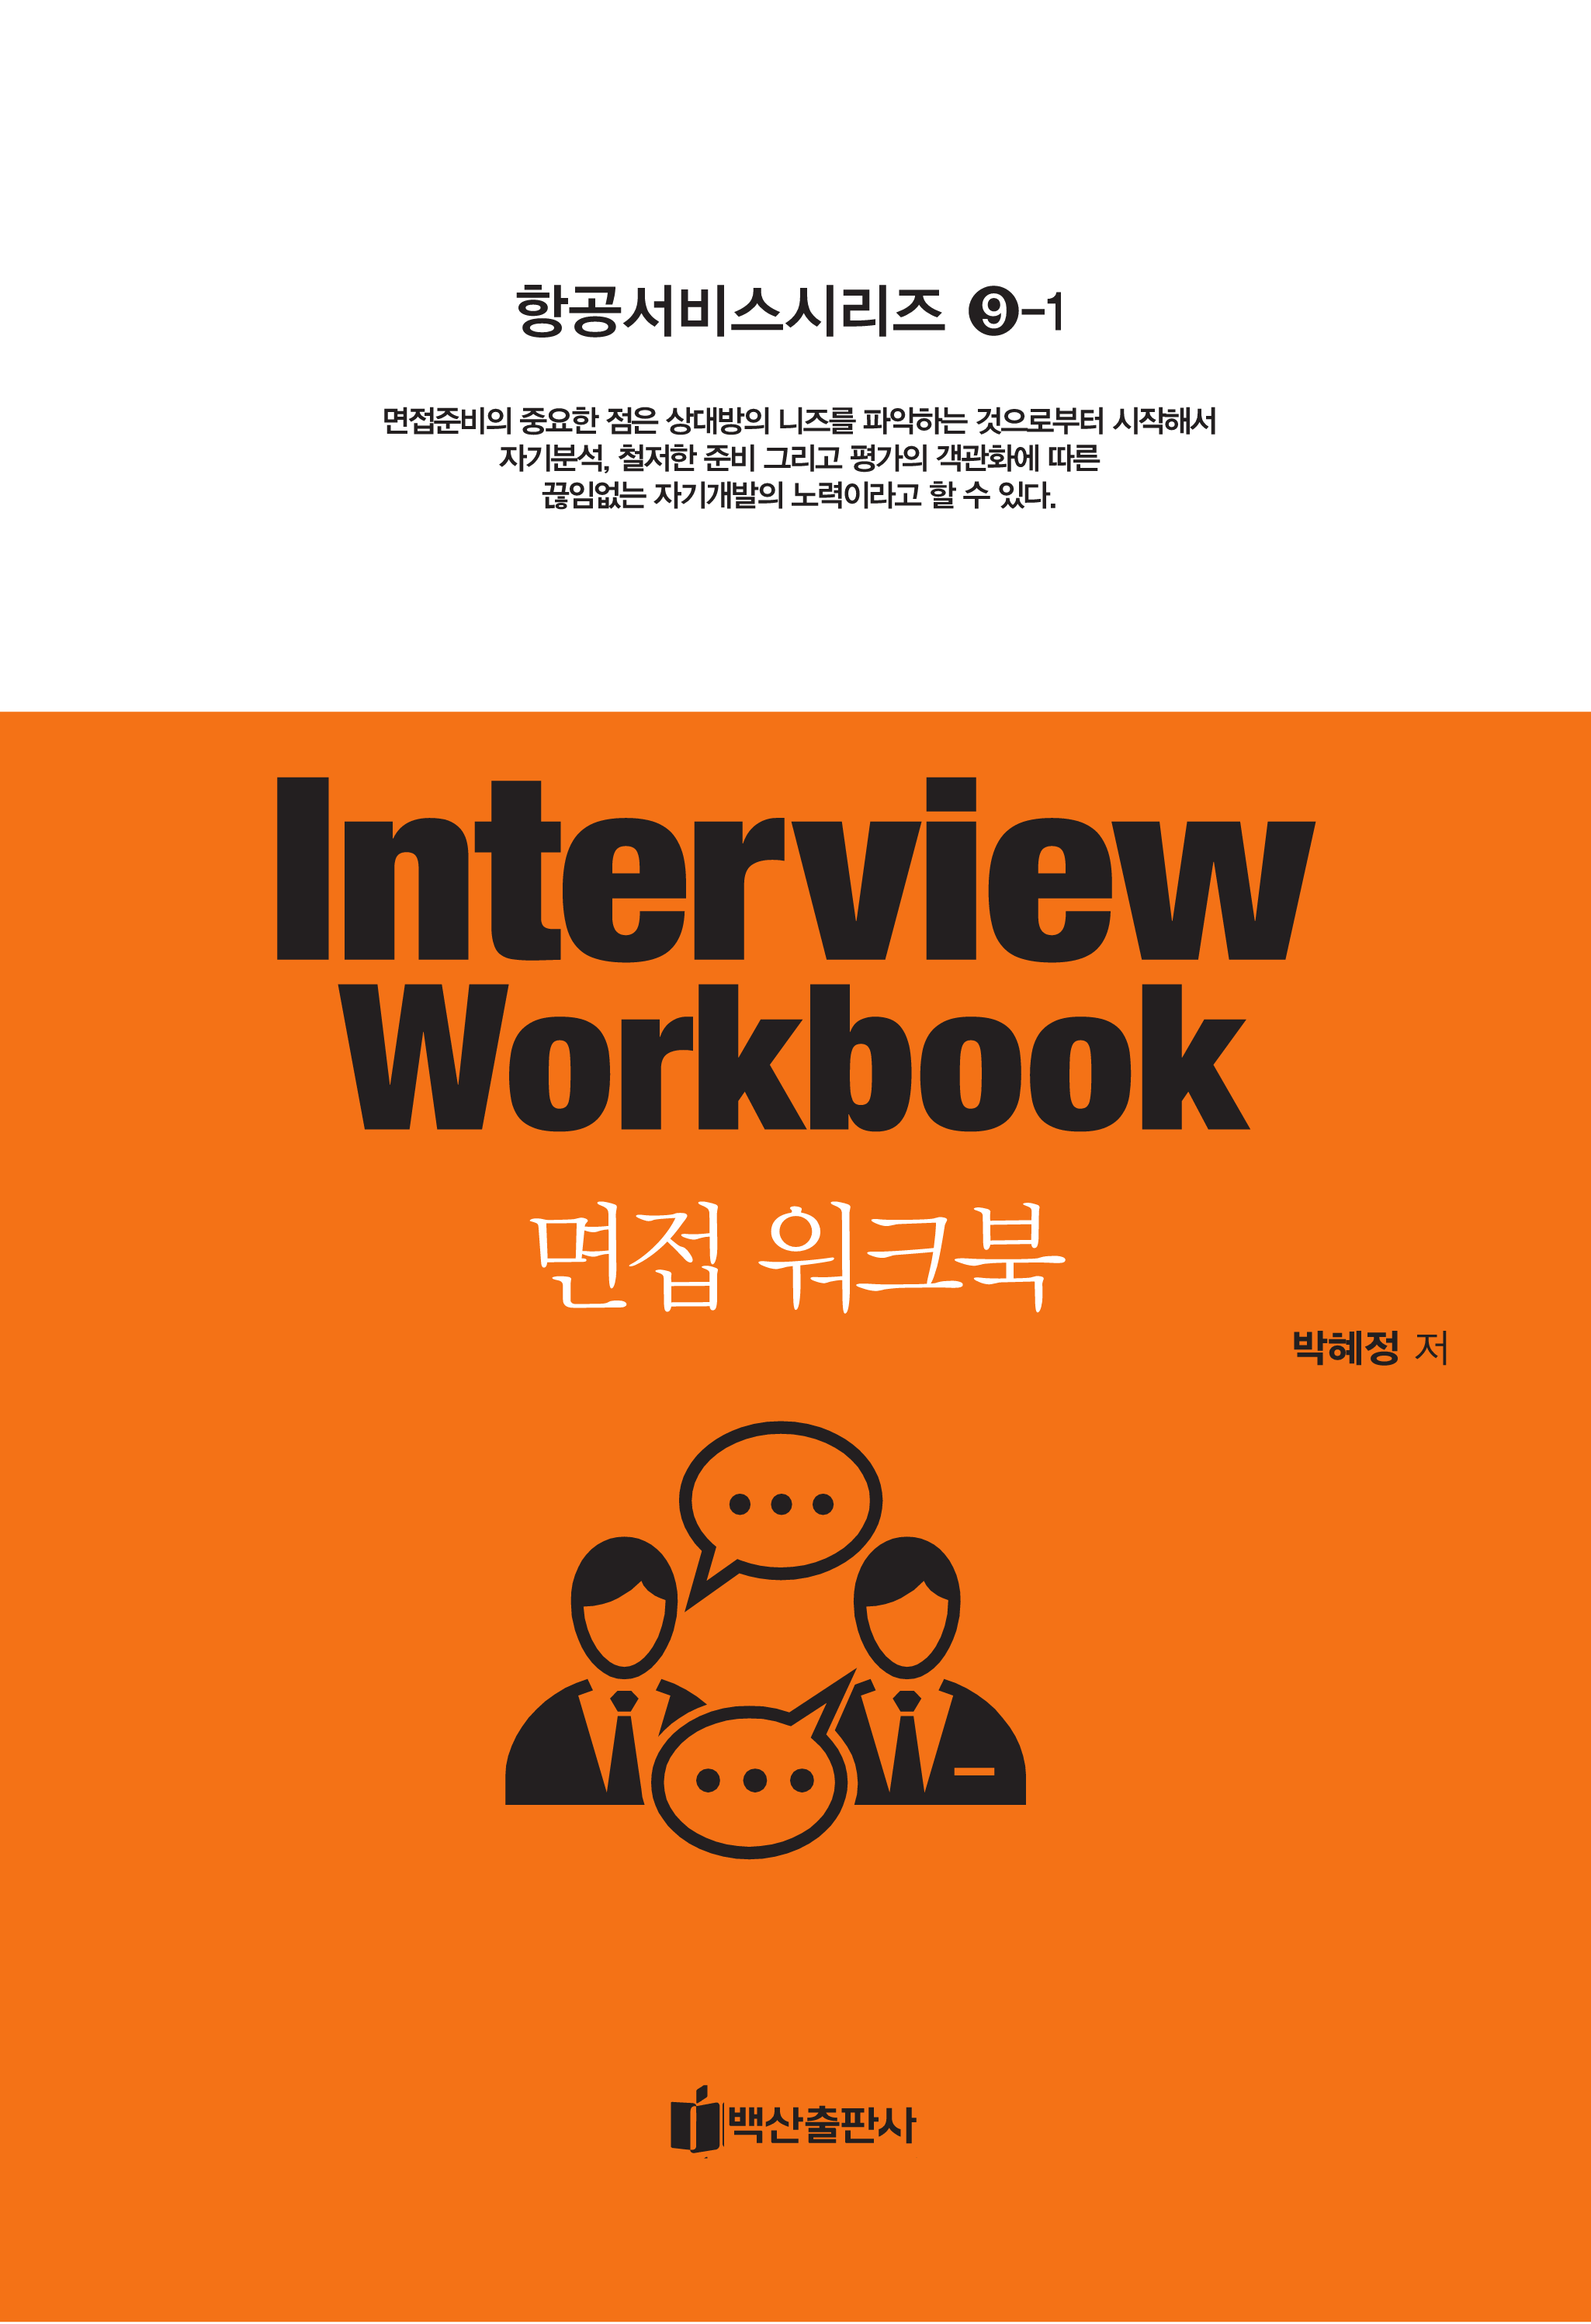 면접 워크북(Interview Workbook)